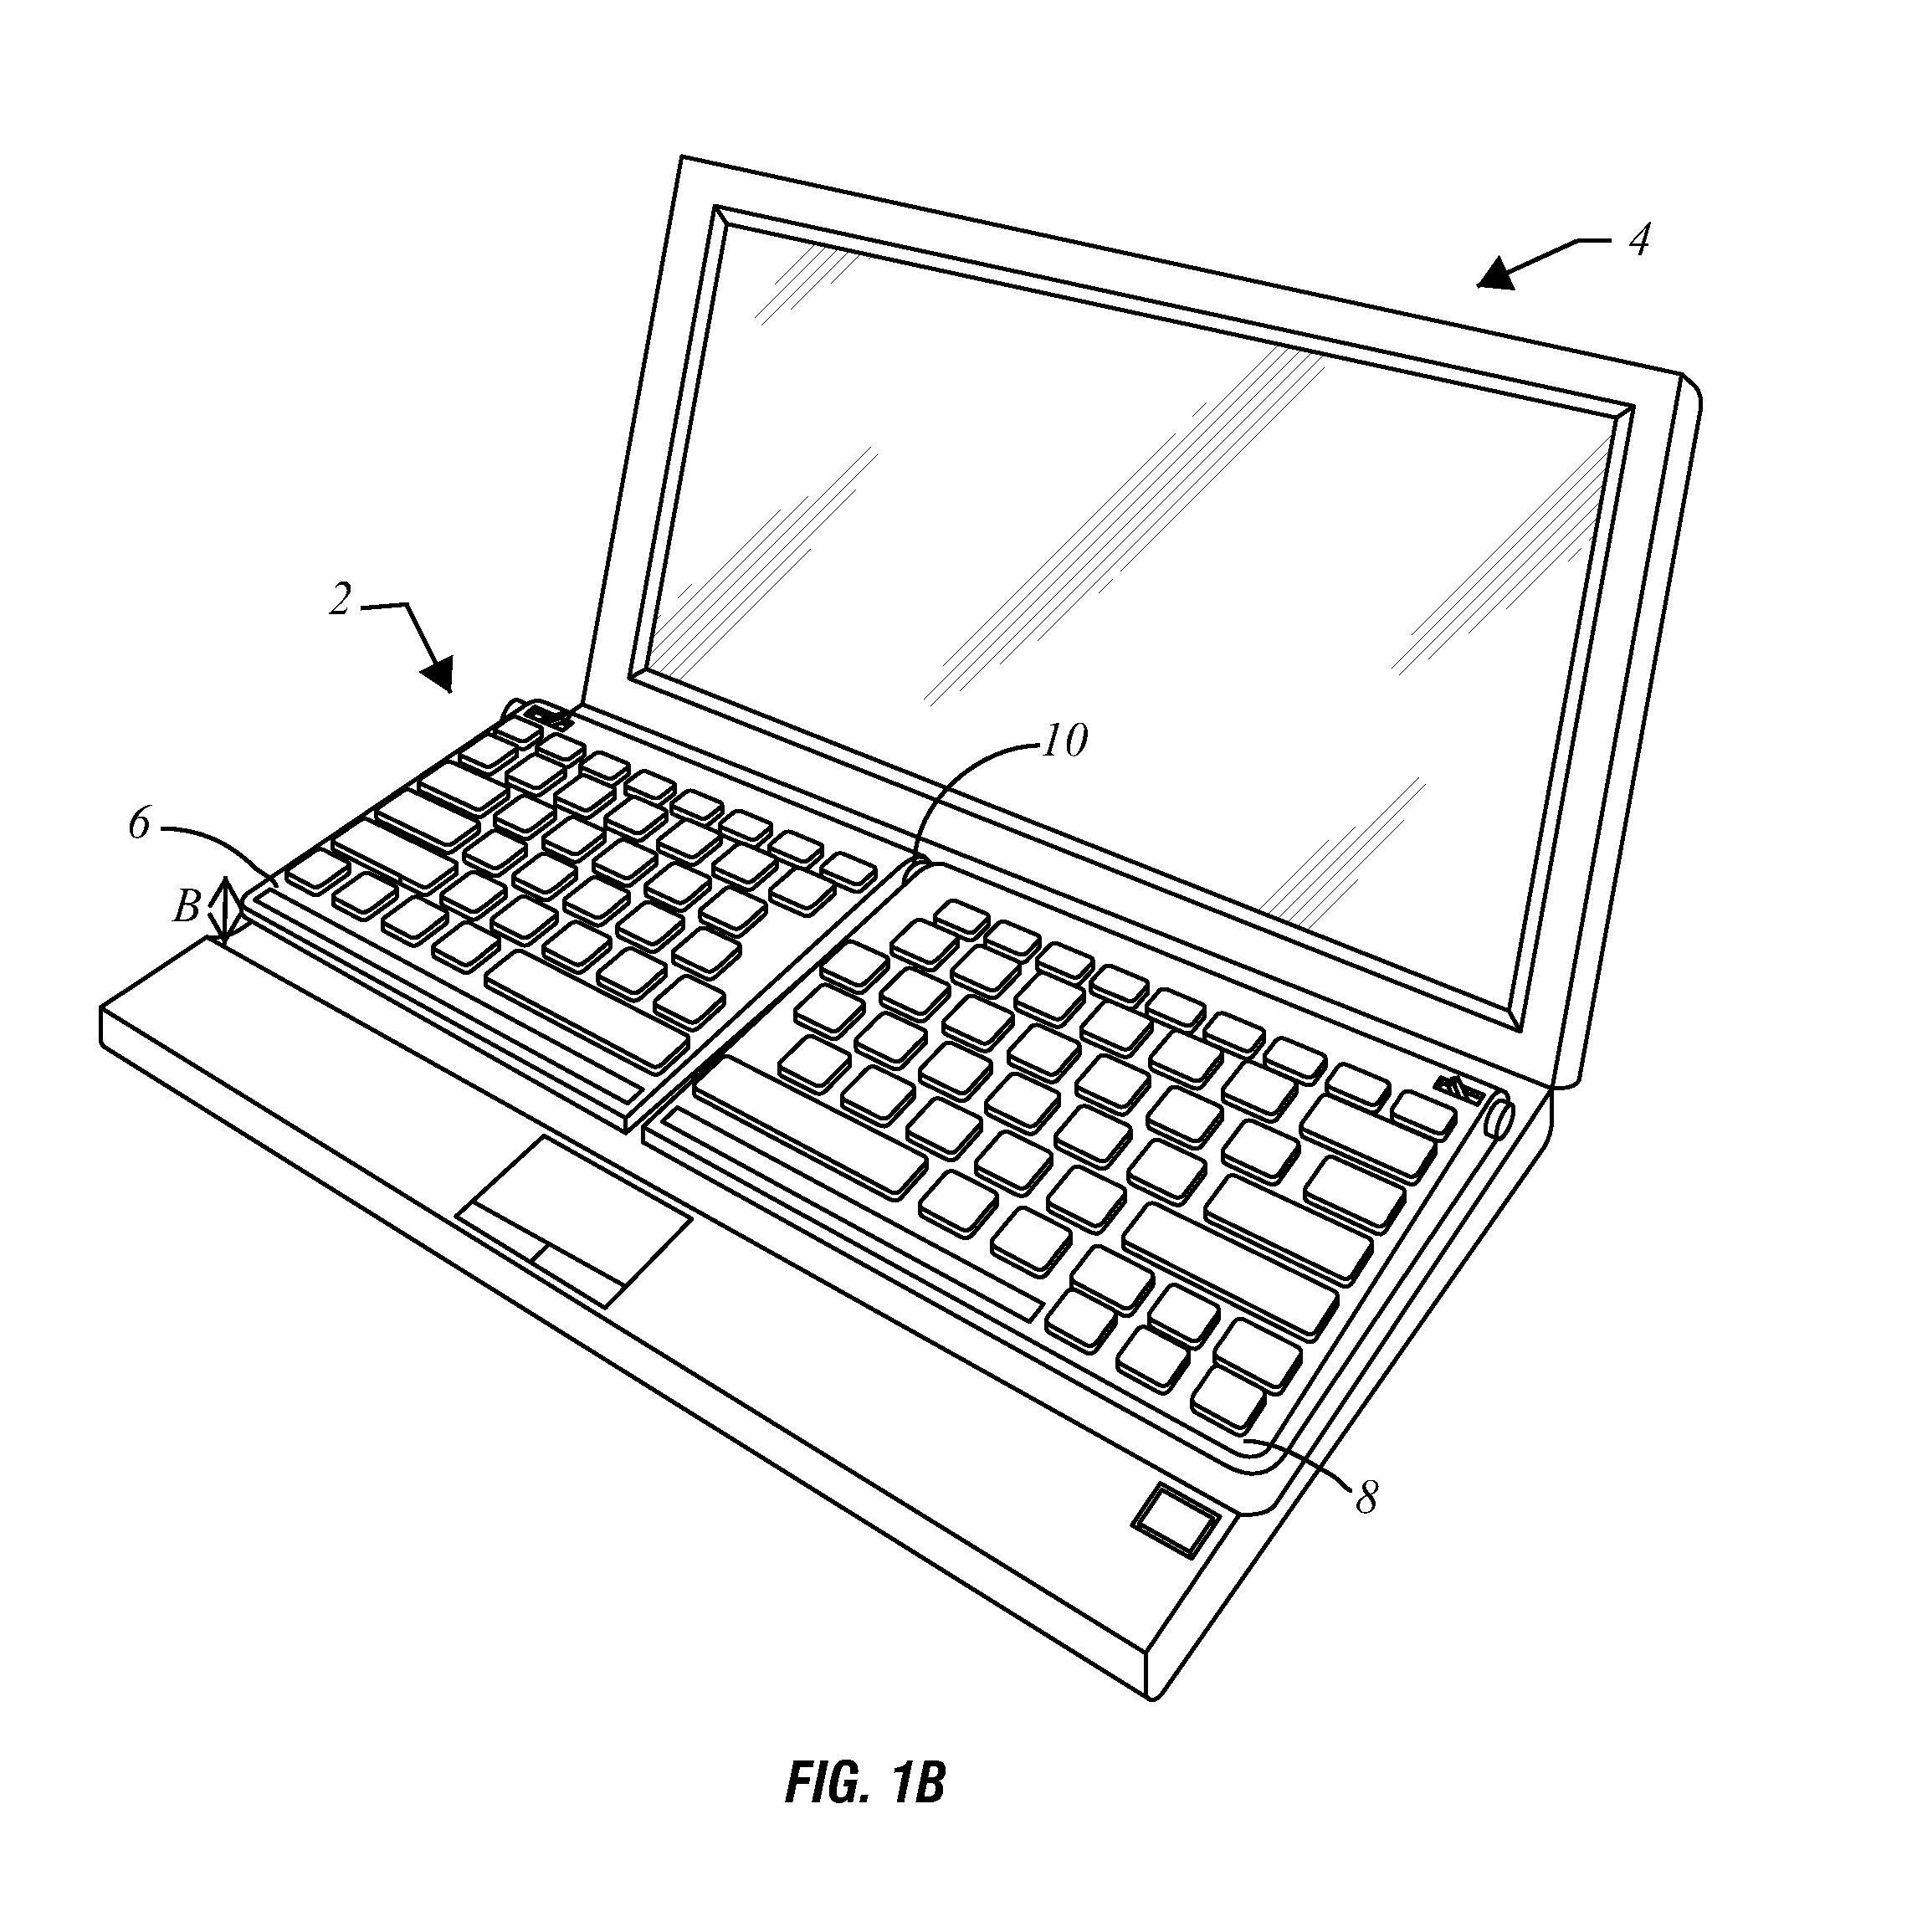 Adjustable ergonomic keyboard